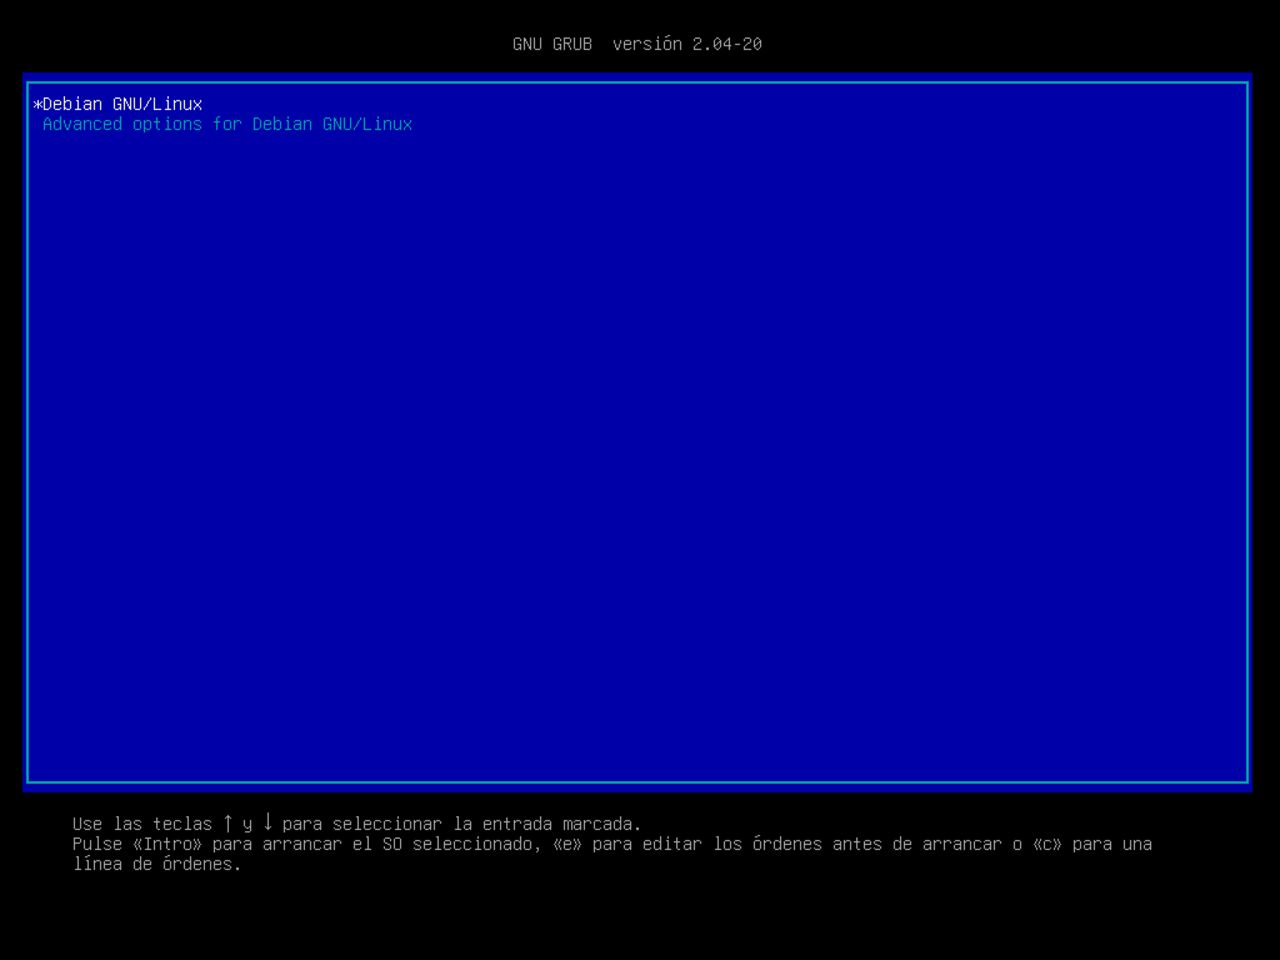 Mi primero laptop con Linux: primer reinicio del sistema para continuar con la instalación de Debian